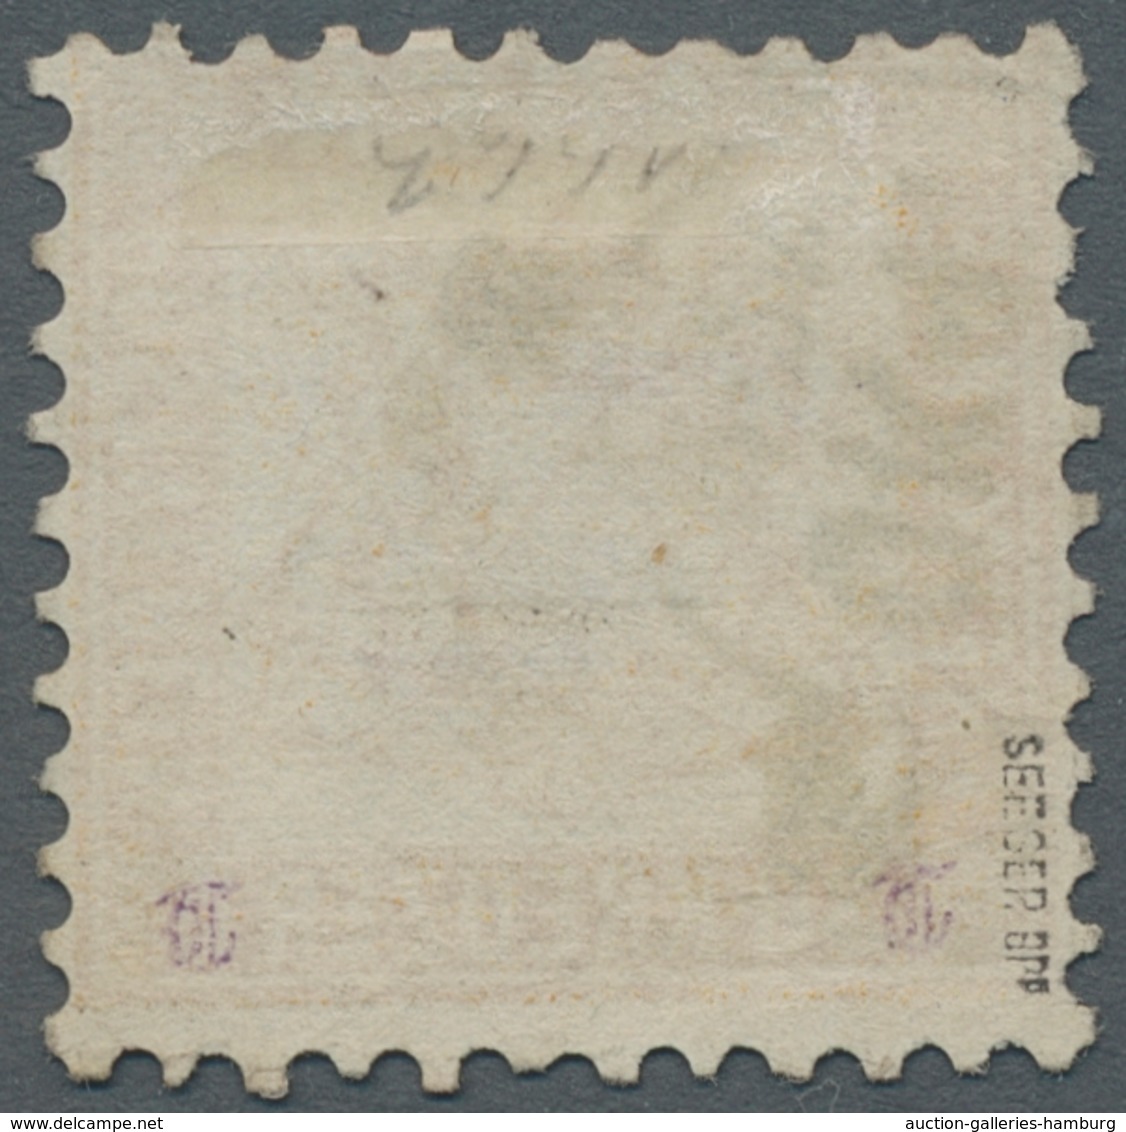 Baden - Marken und Briefe: 1811/1871; diese bemerkenswerte Sammlung enthält neben einem überkomplett